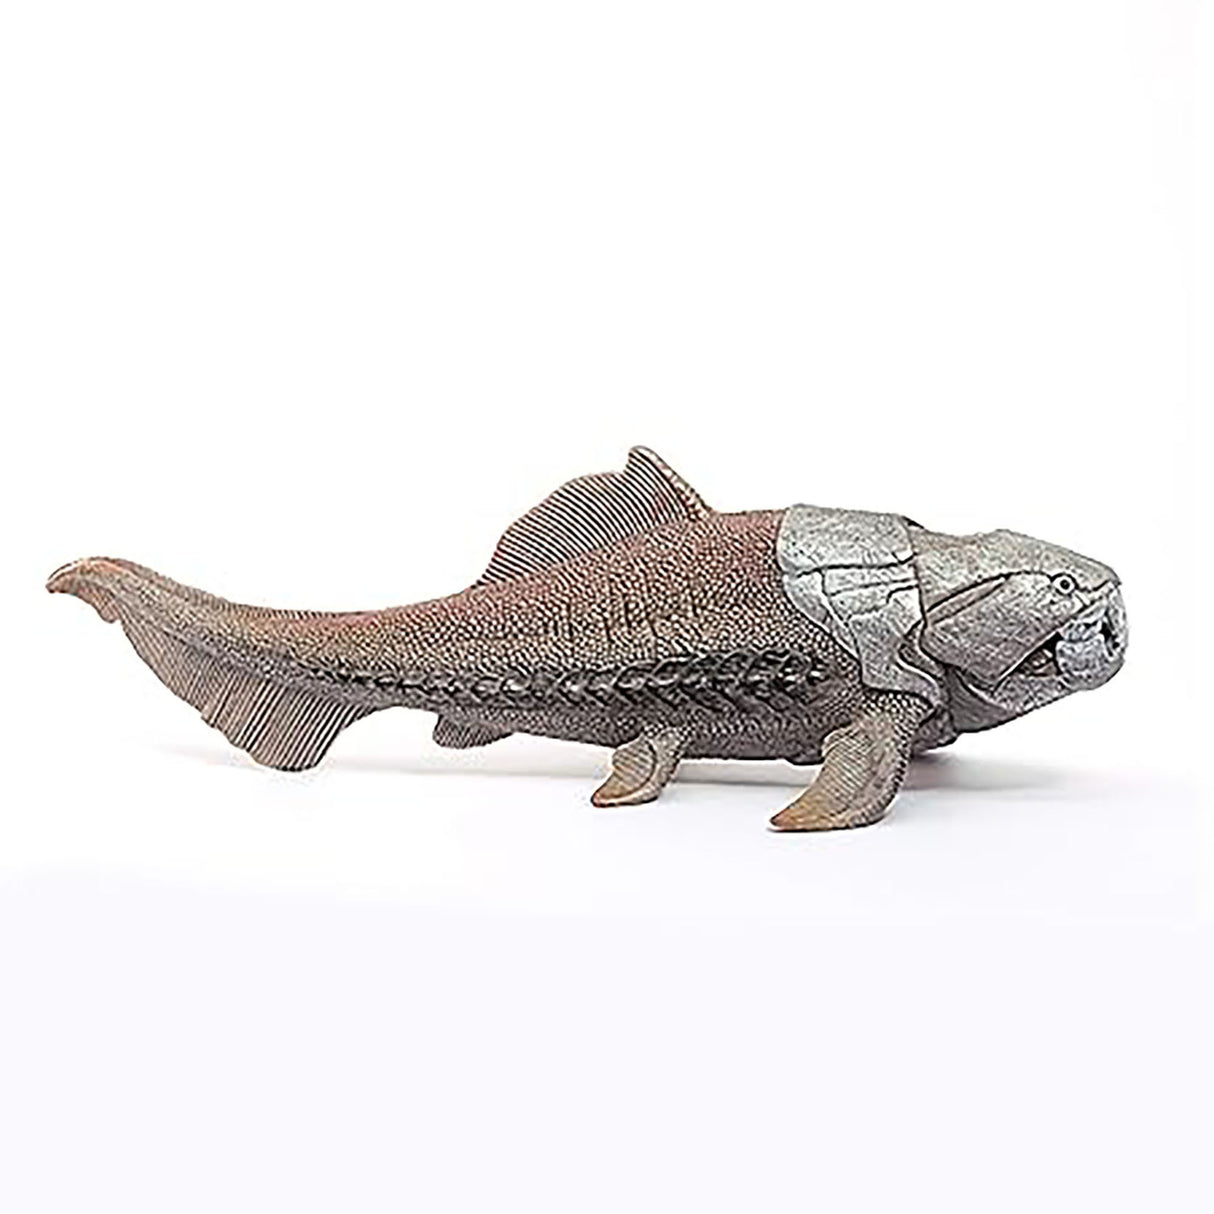 Schleich Dunkleosteus Dinosaur Figure